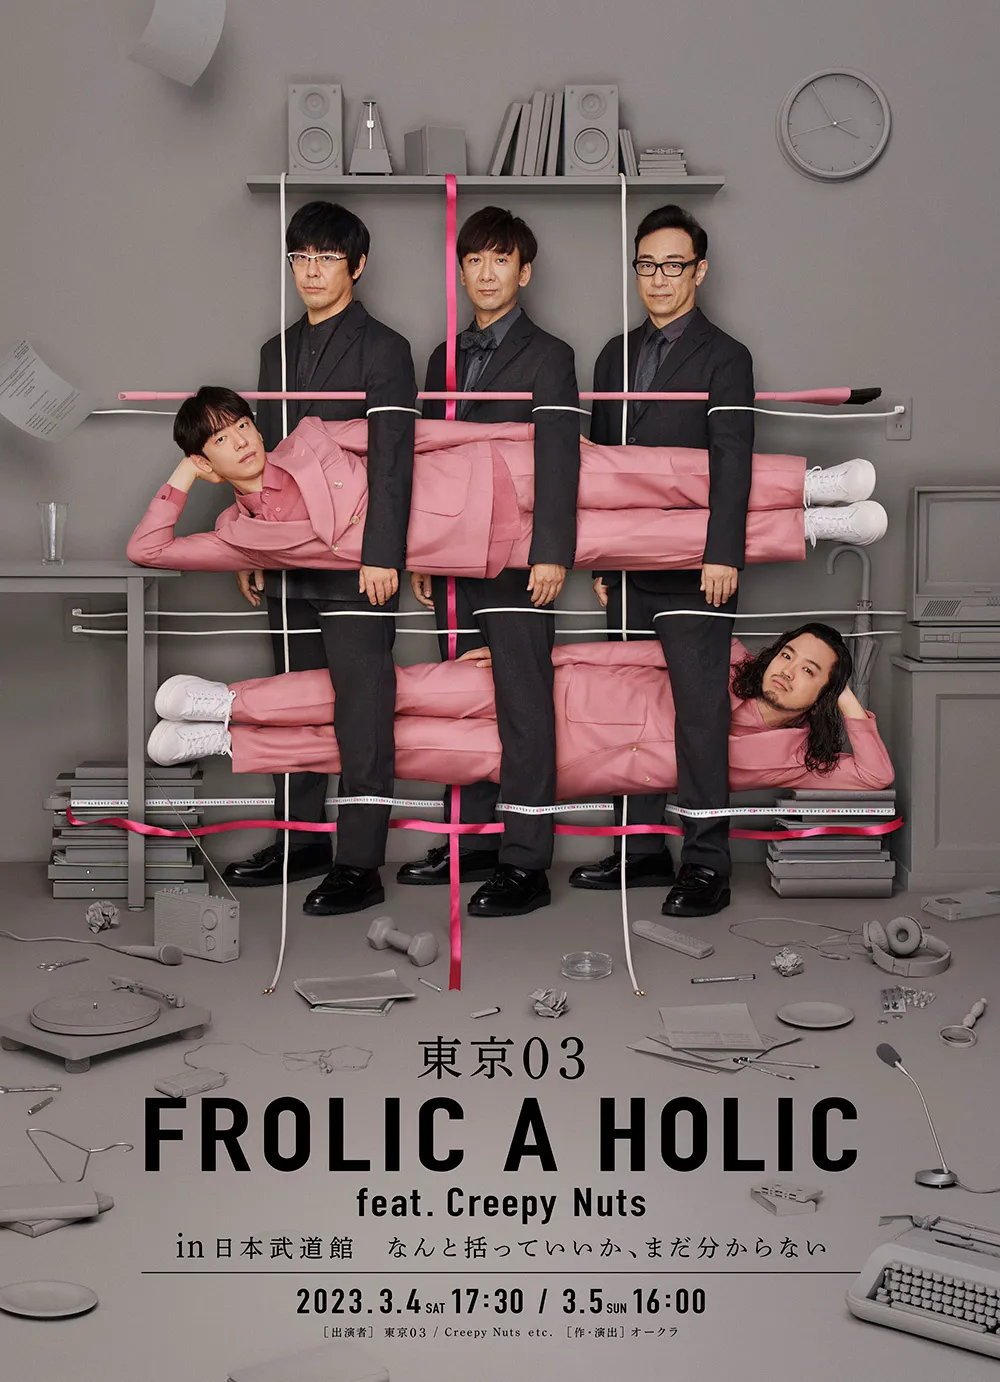 「東京03 FROLIC A HOLIC feat. Creepy Nuts in なんと括っていいか、まだ分からない」キービジュアル